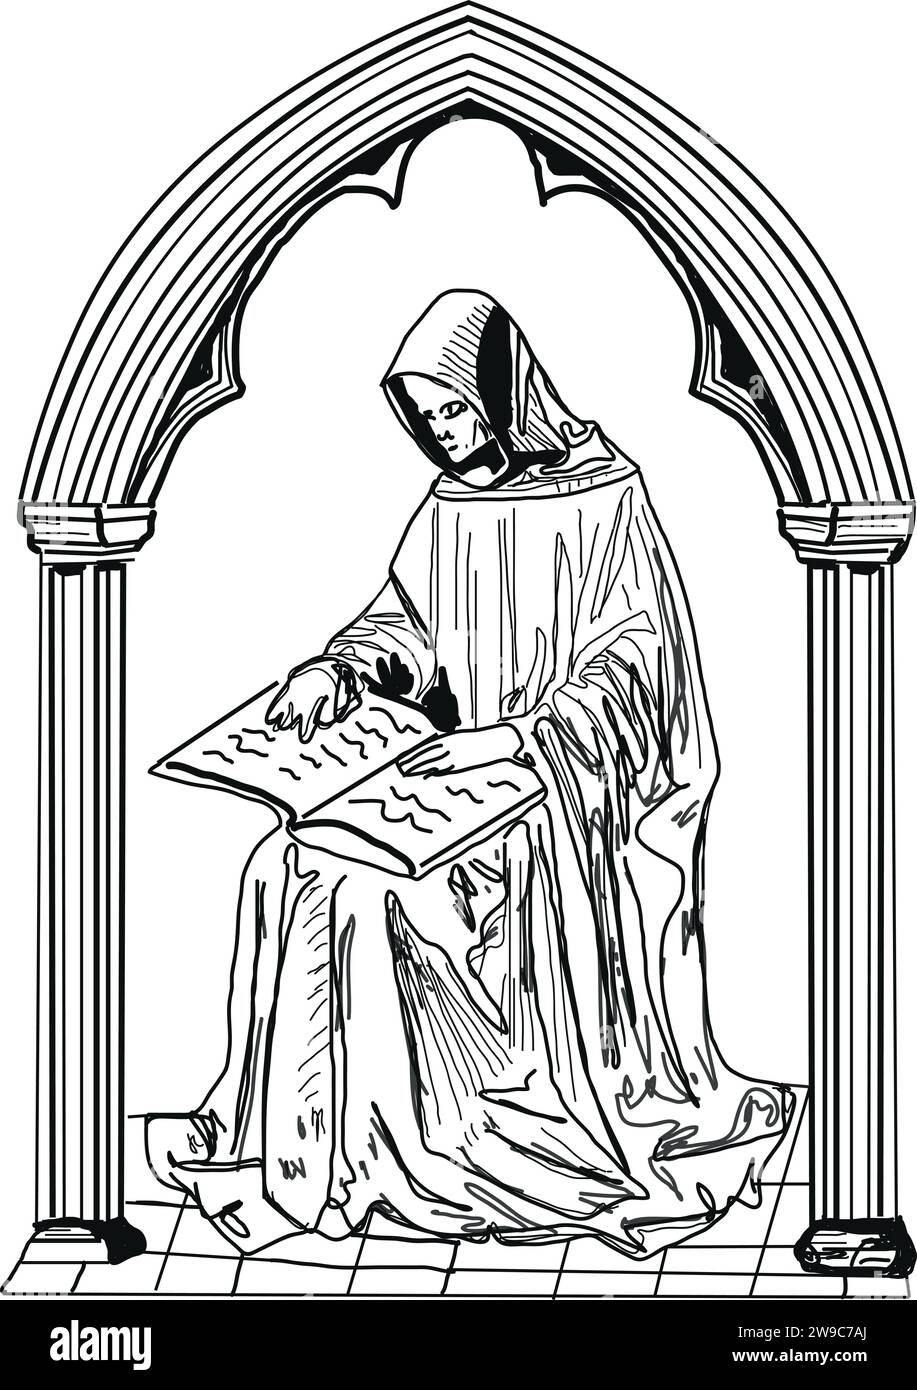 Illustration d'un moine médiéval lisant un livre, arche gothique, gravure sur bois style manuscrit enluminé Illustration de Vecteur